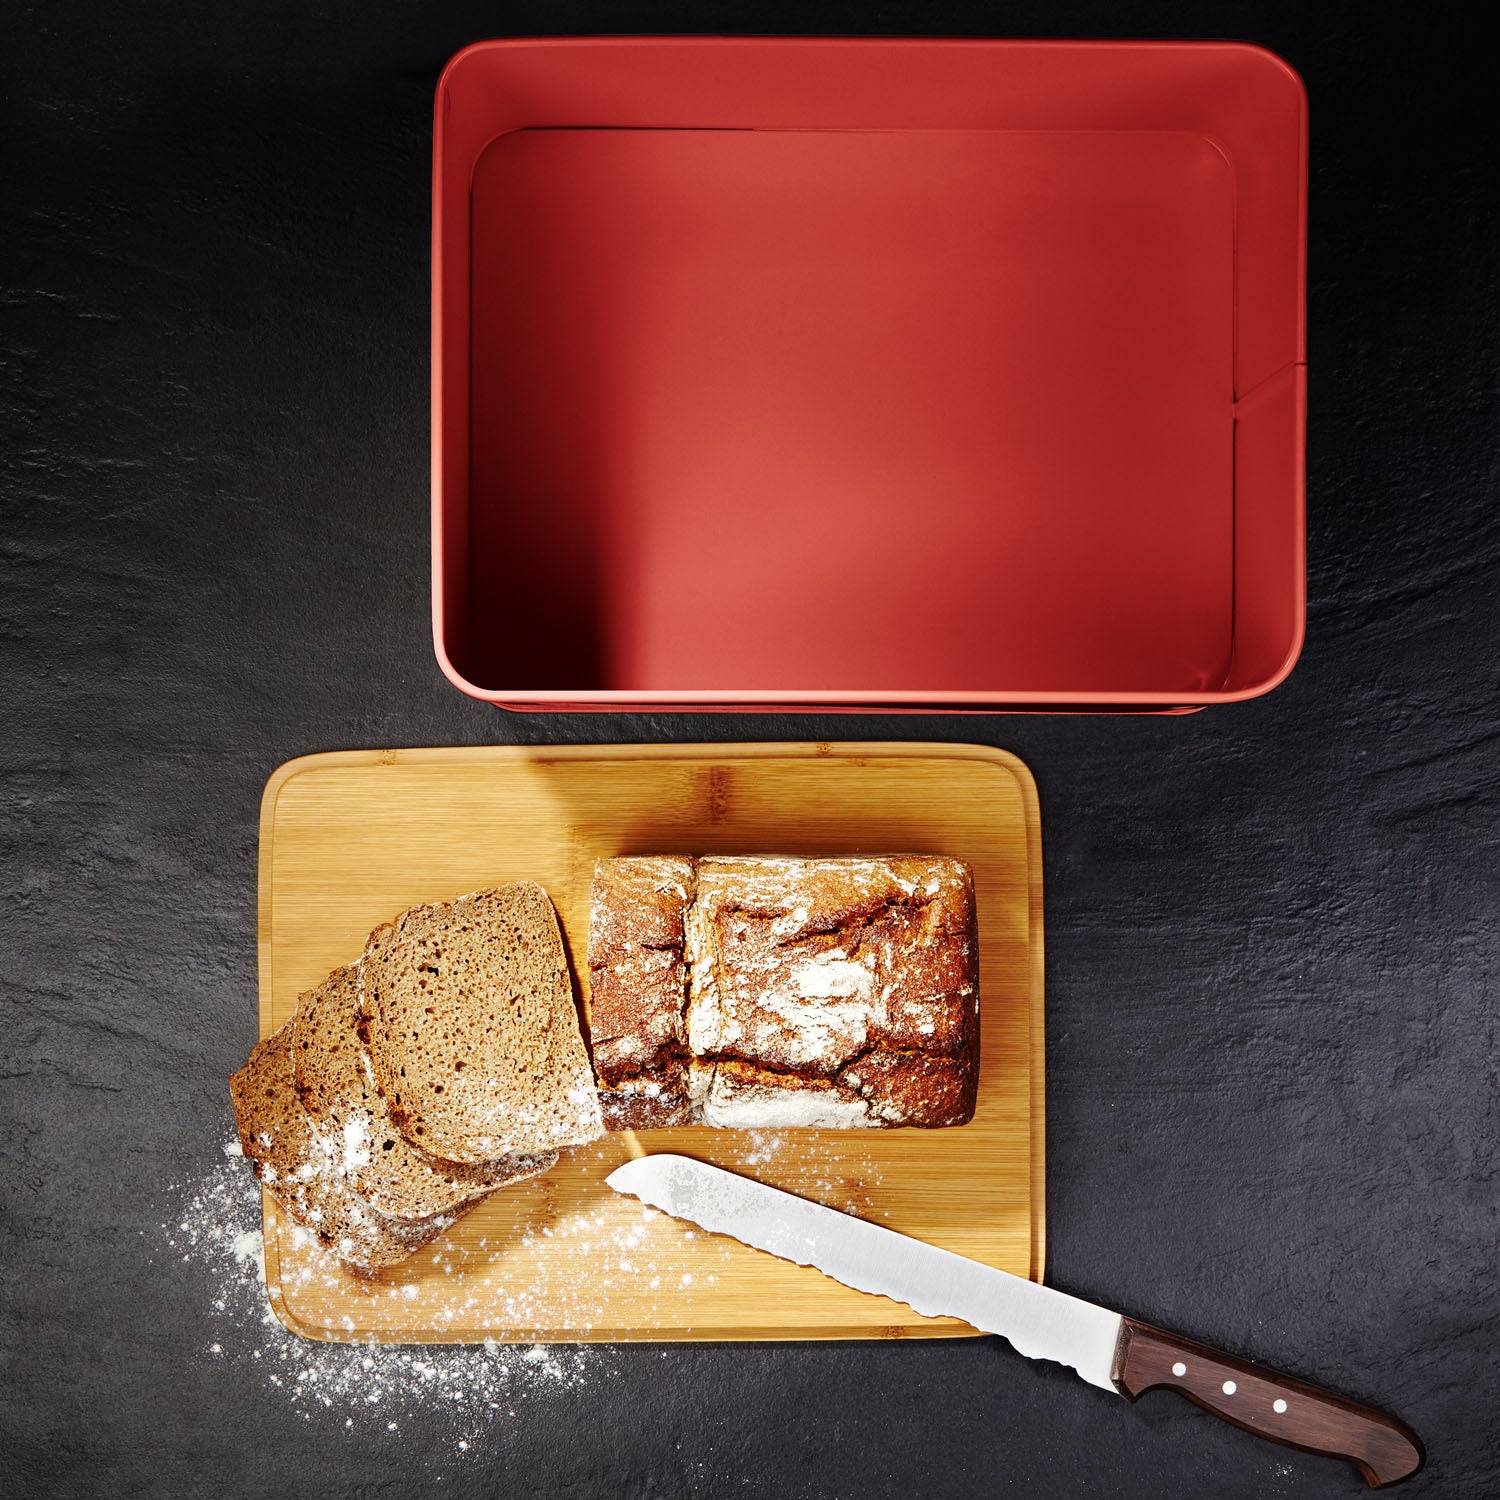 Cuisine Brotkasten aus Metall mit Bambus Deckel - Rechteckig 30,5 x 23,5 x 14 cm - Rot